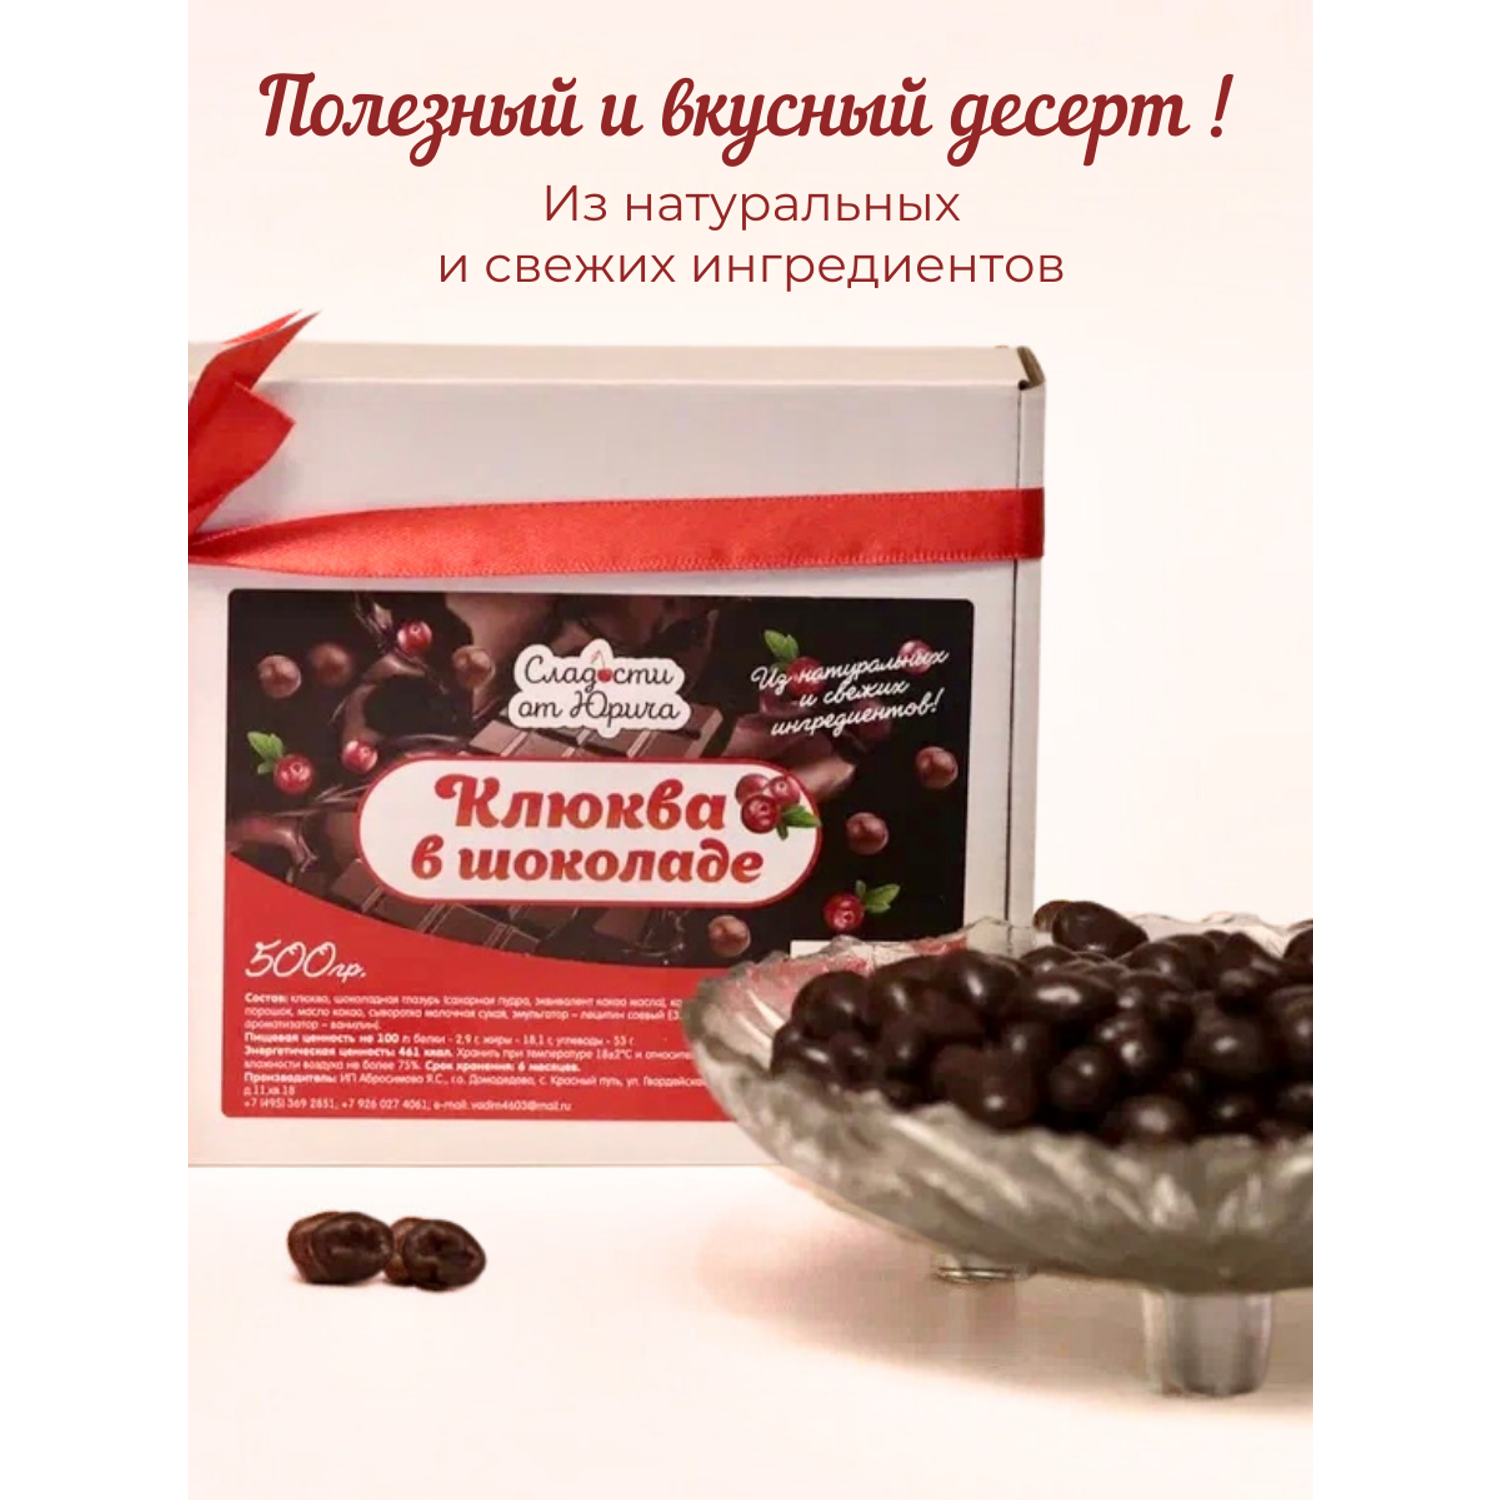 Клюква в шоколаде Сладости от Юрича 500гр - фото 2